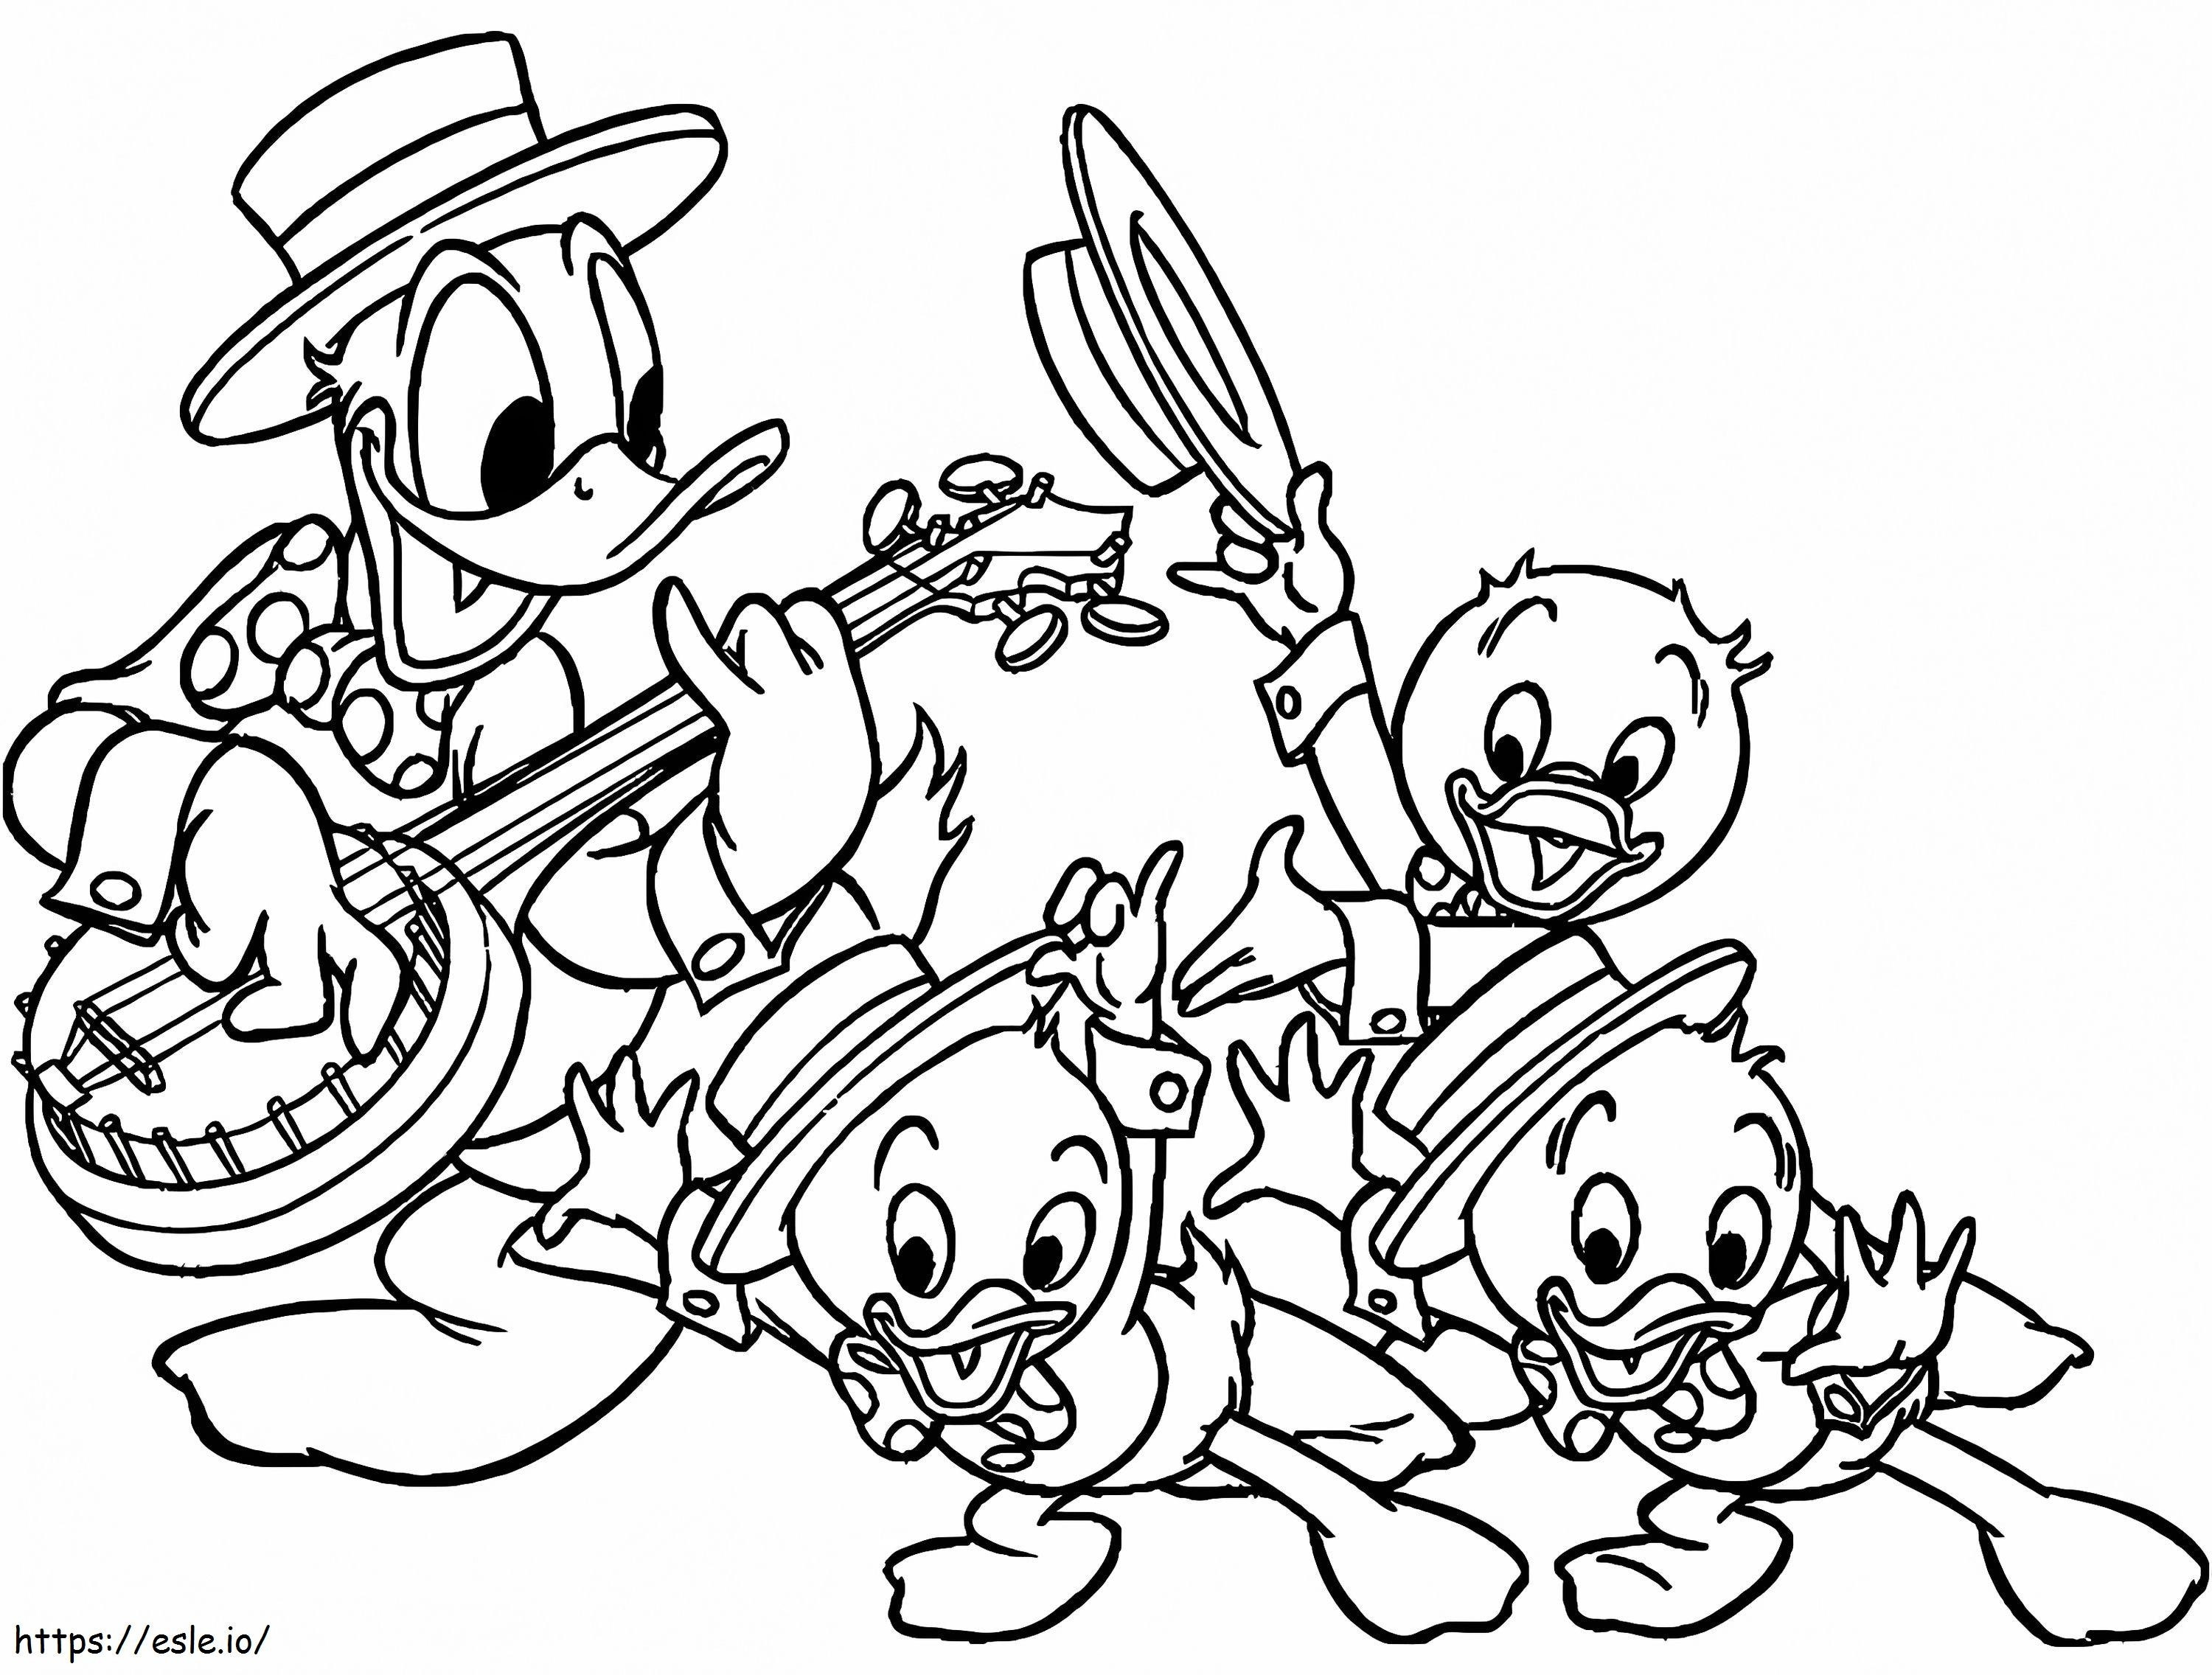 Coloriage Donald Duck jouant du banjo à imprimer dessin